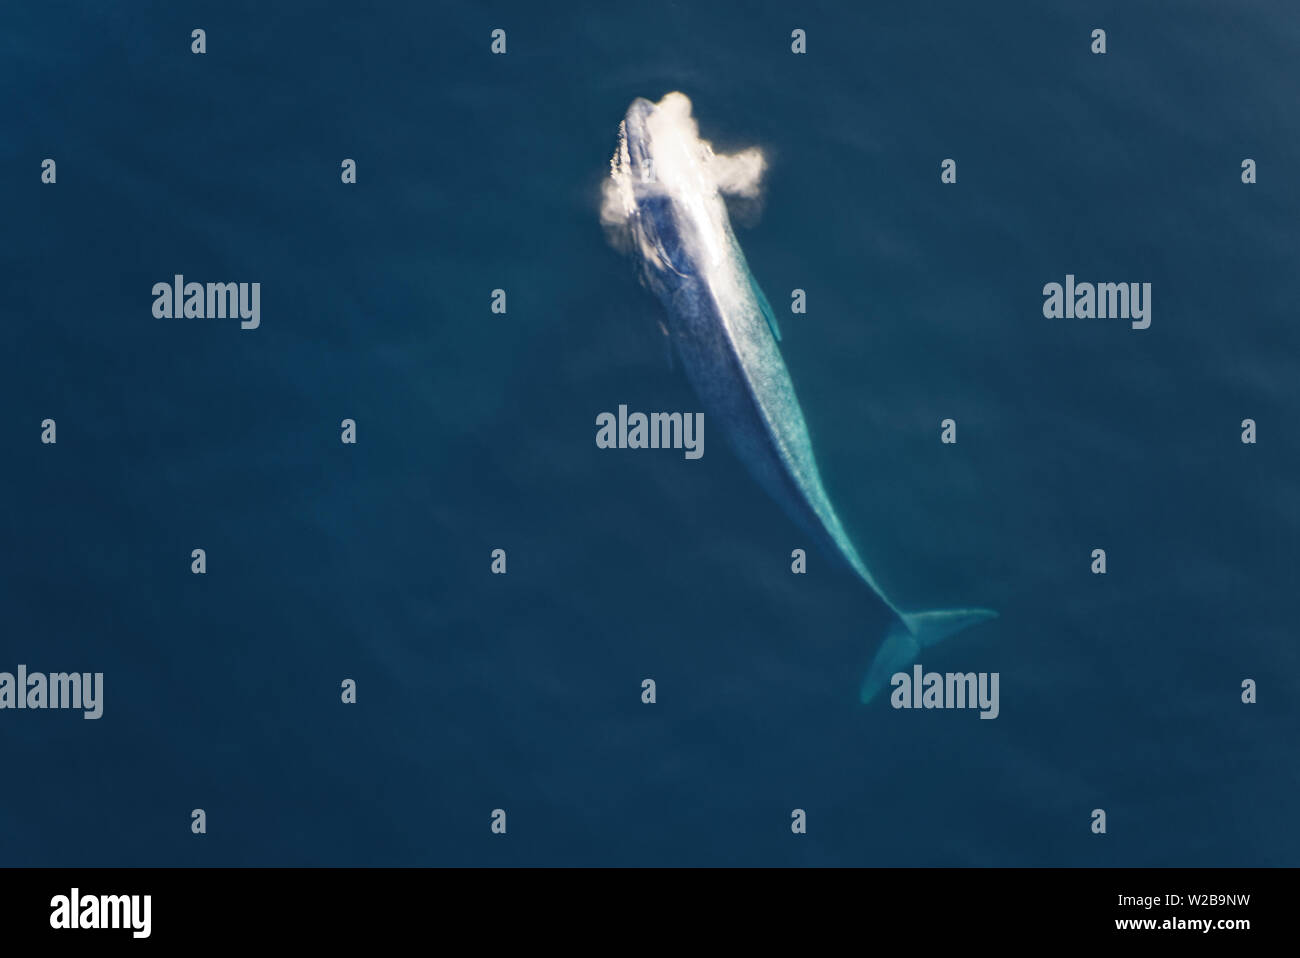 Der Blauwal, einem großen Meeressäuger, kommt wieder Luft Stockfoto